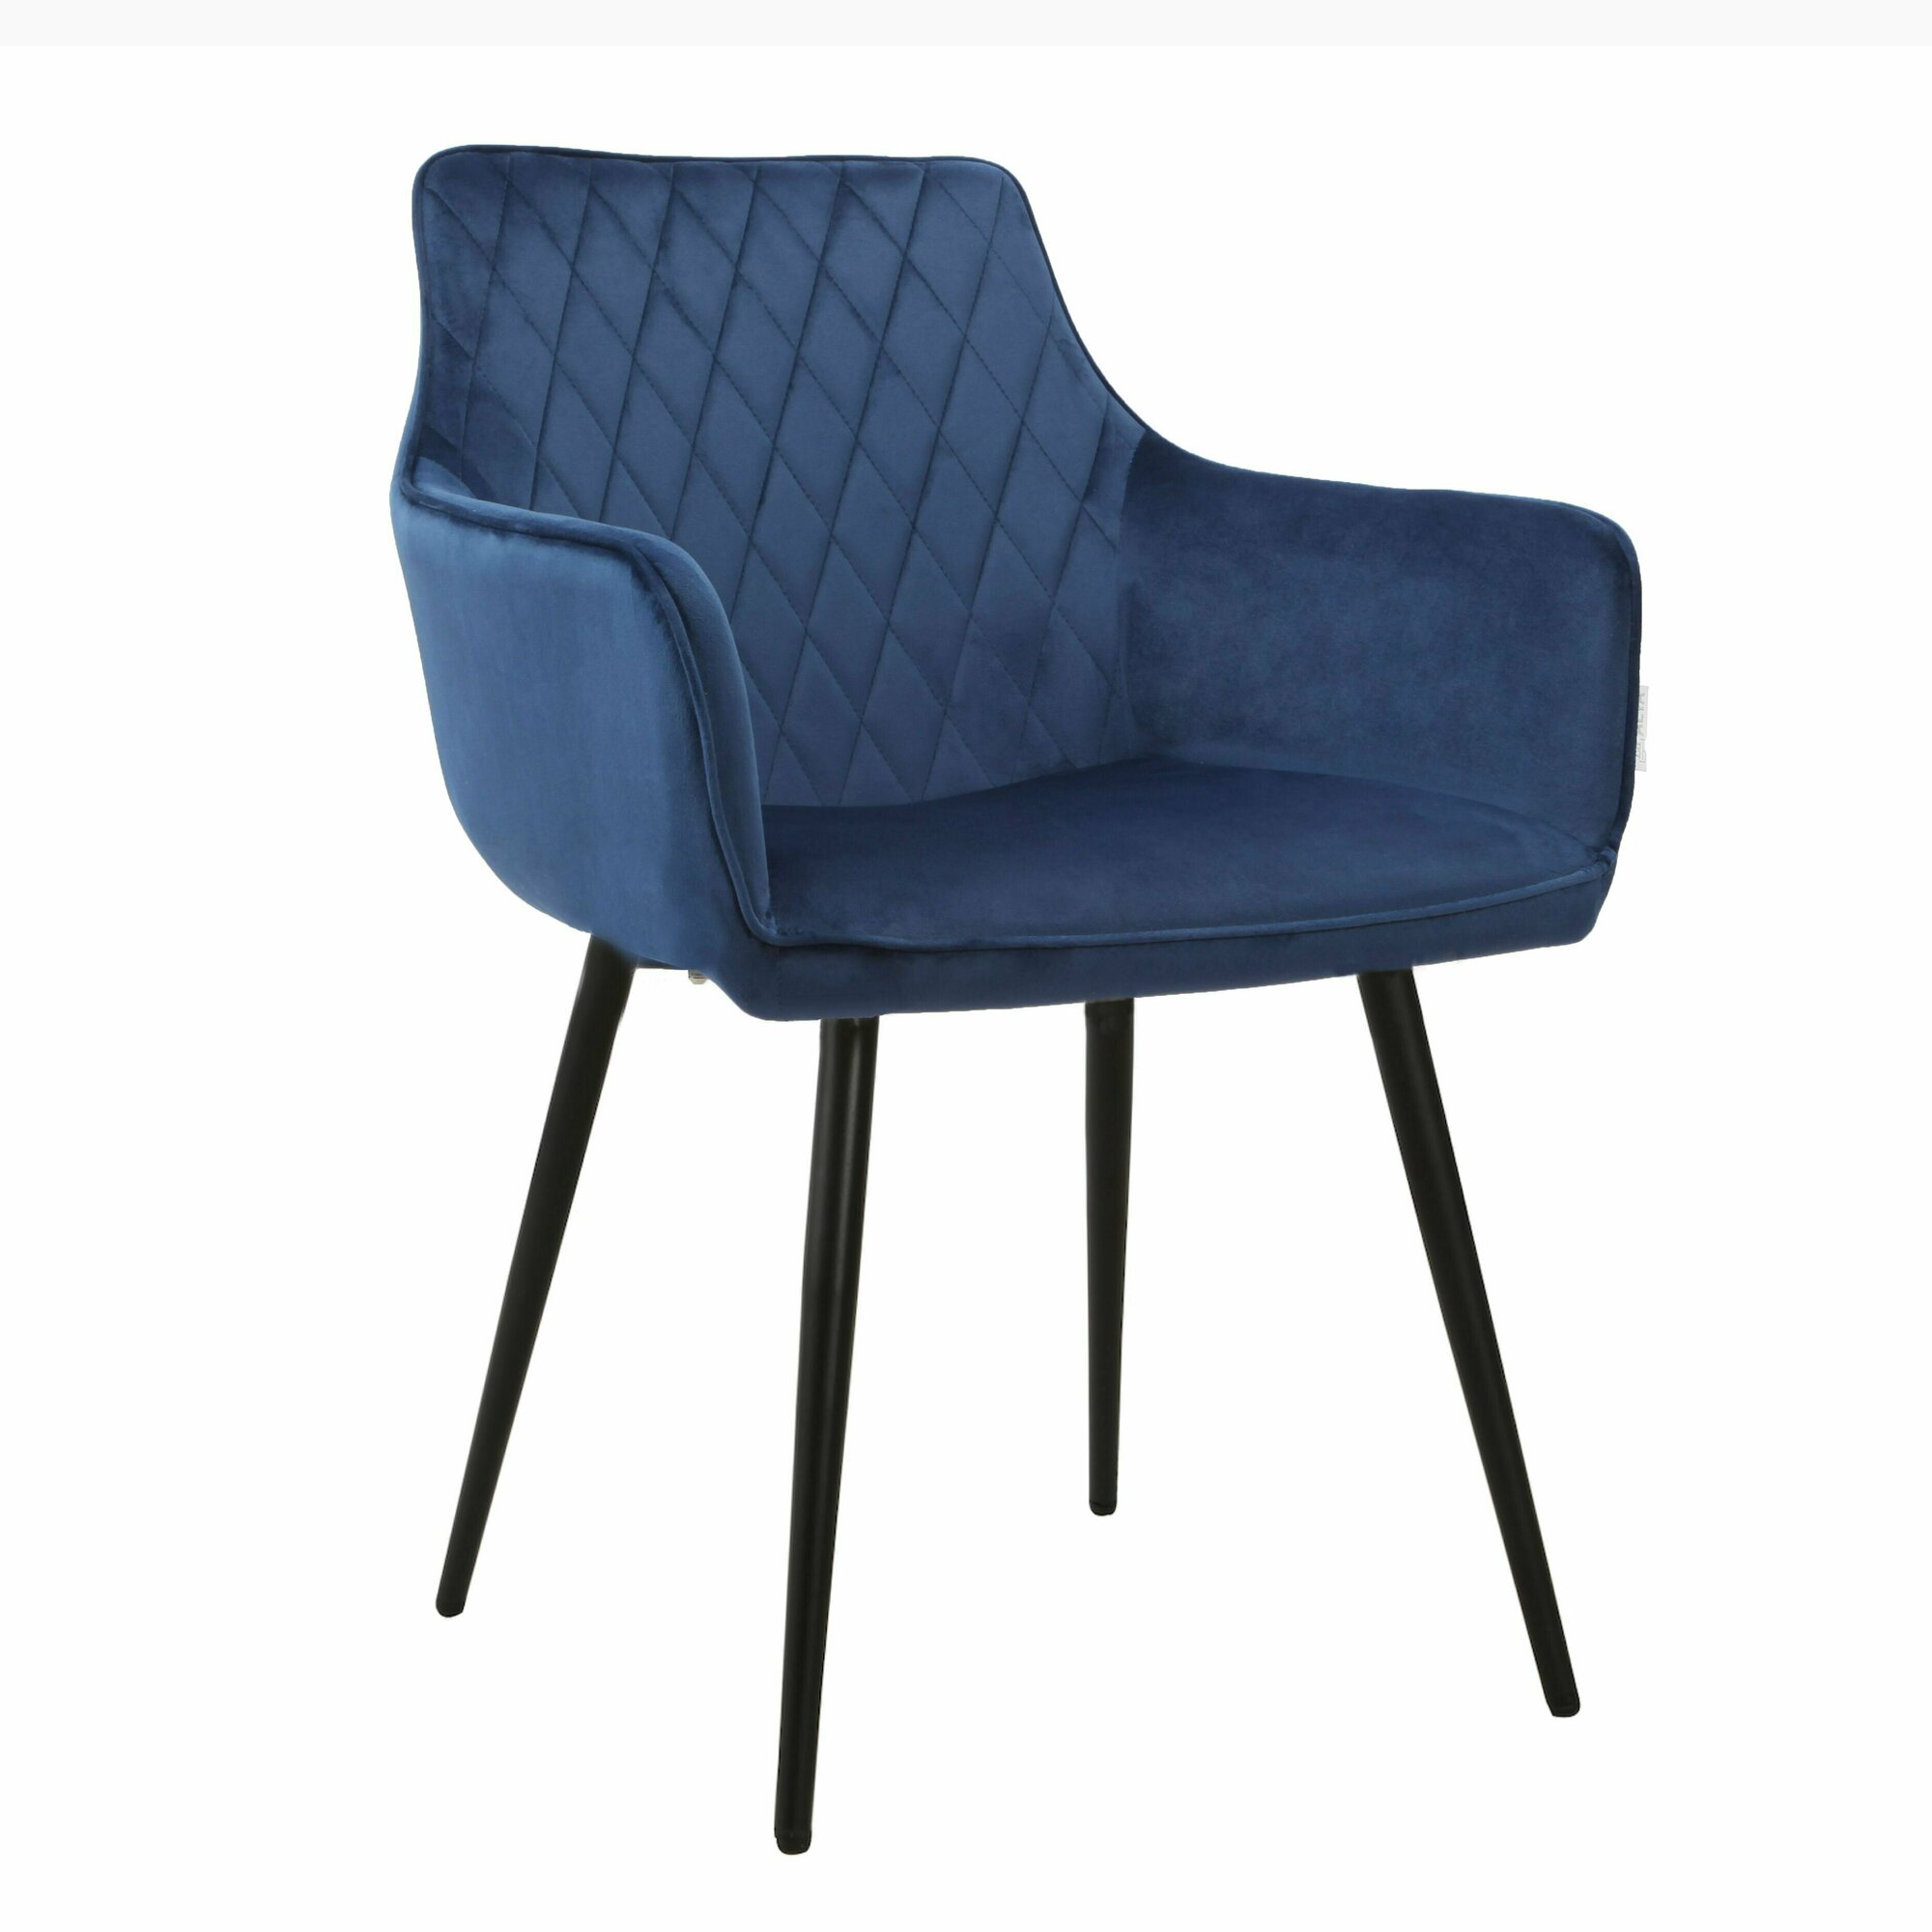 Стул Амьен мягкий кресло на кухню комплект 2 штуки цвет синий